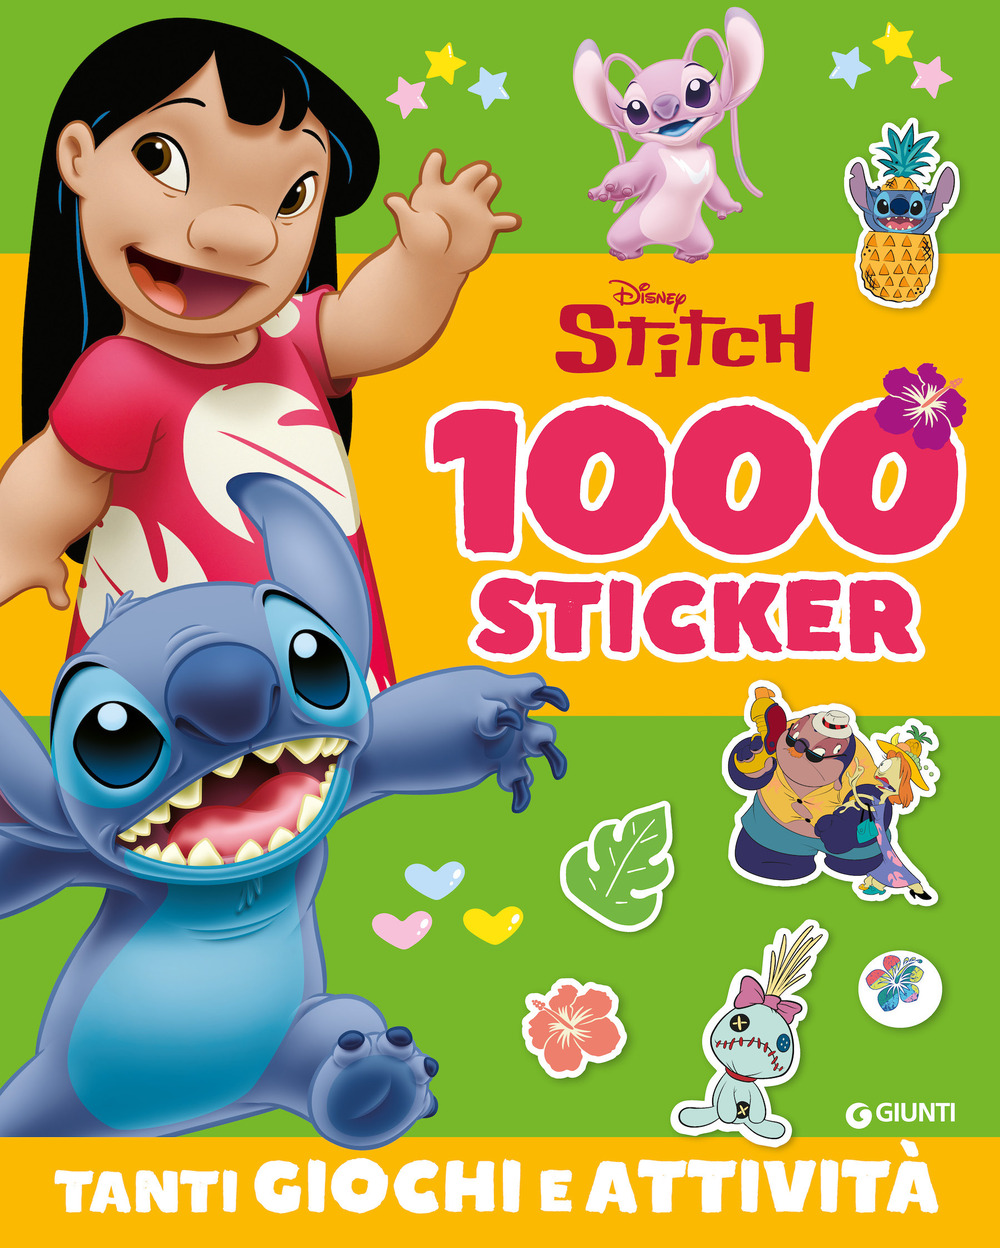 Stitch. 1000 sticker. Tanti giochi e attività